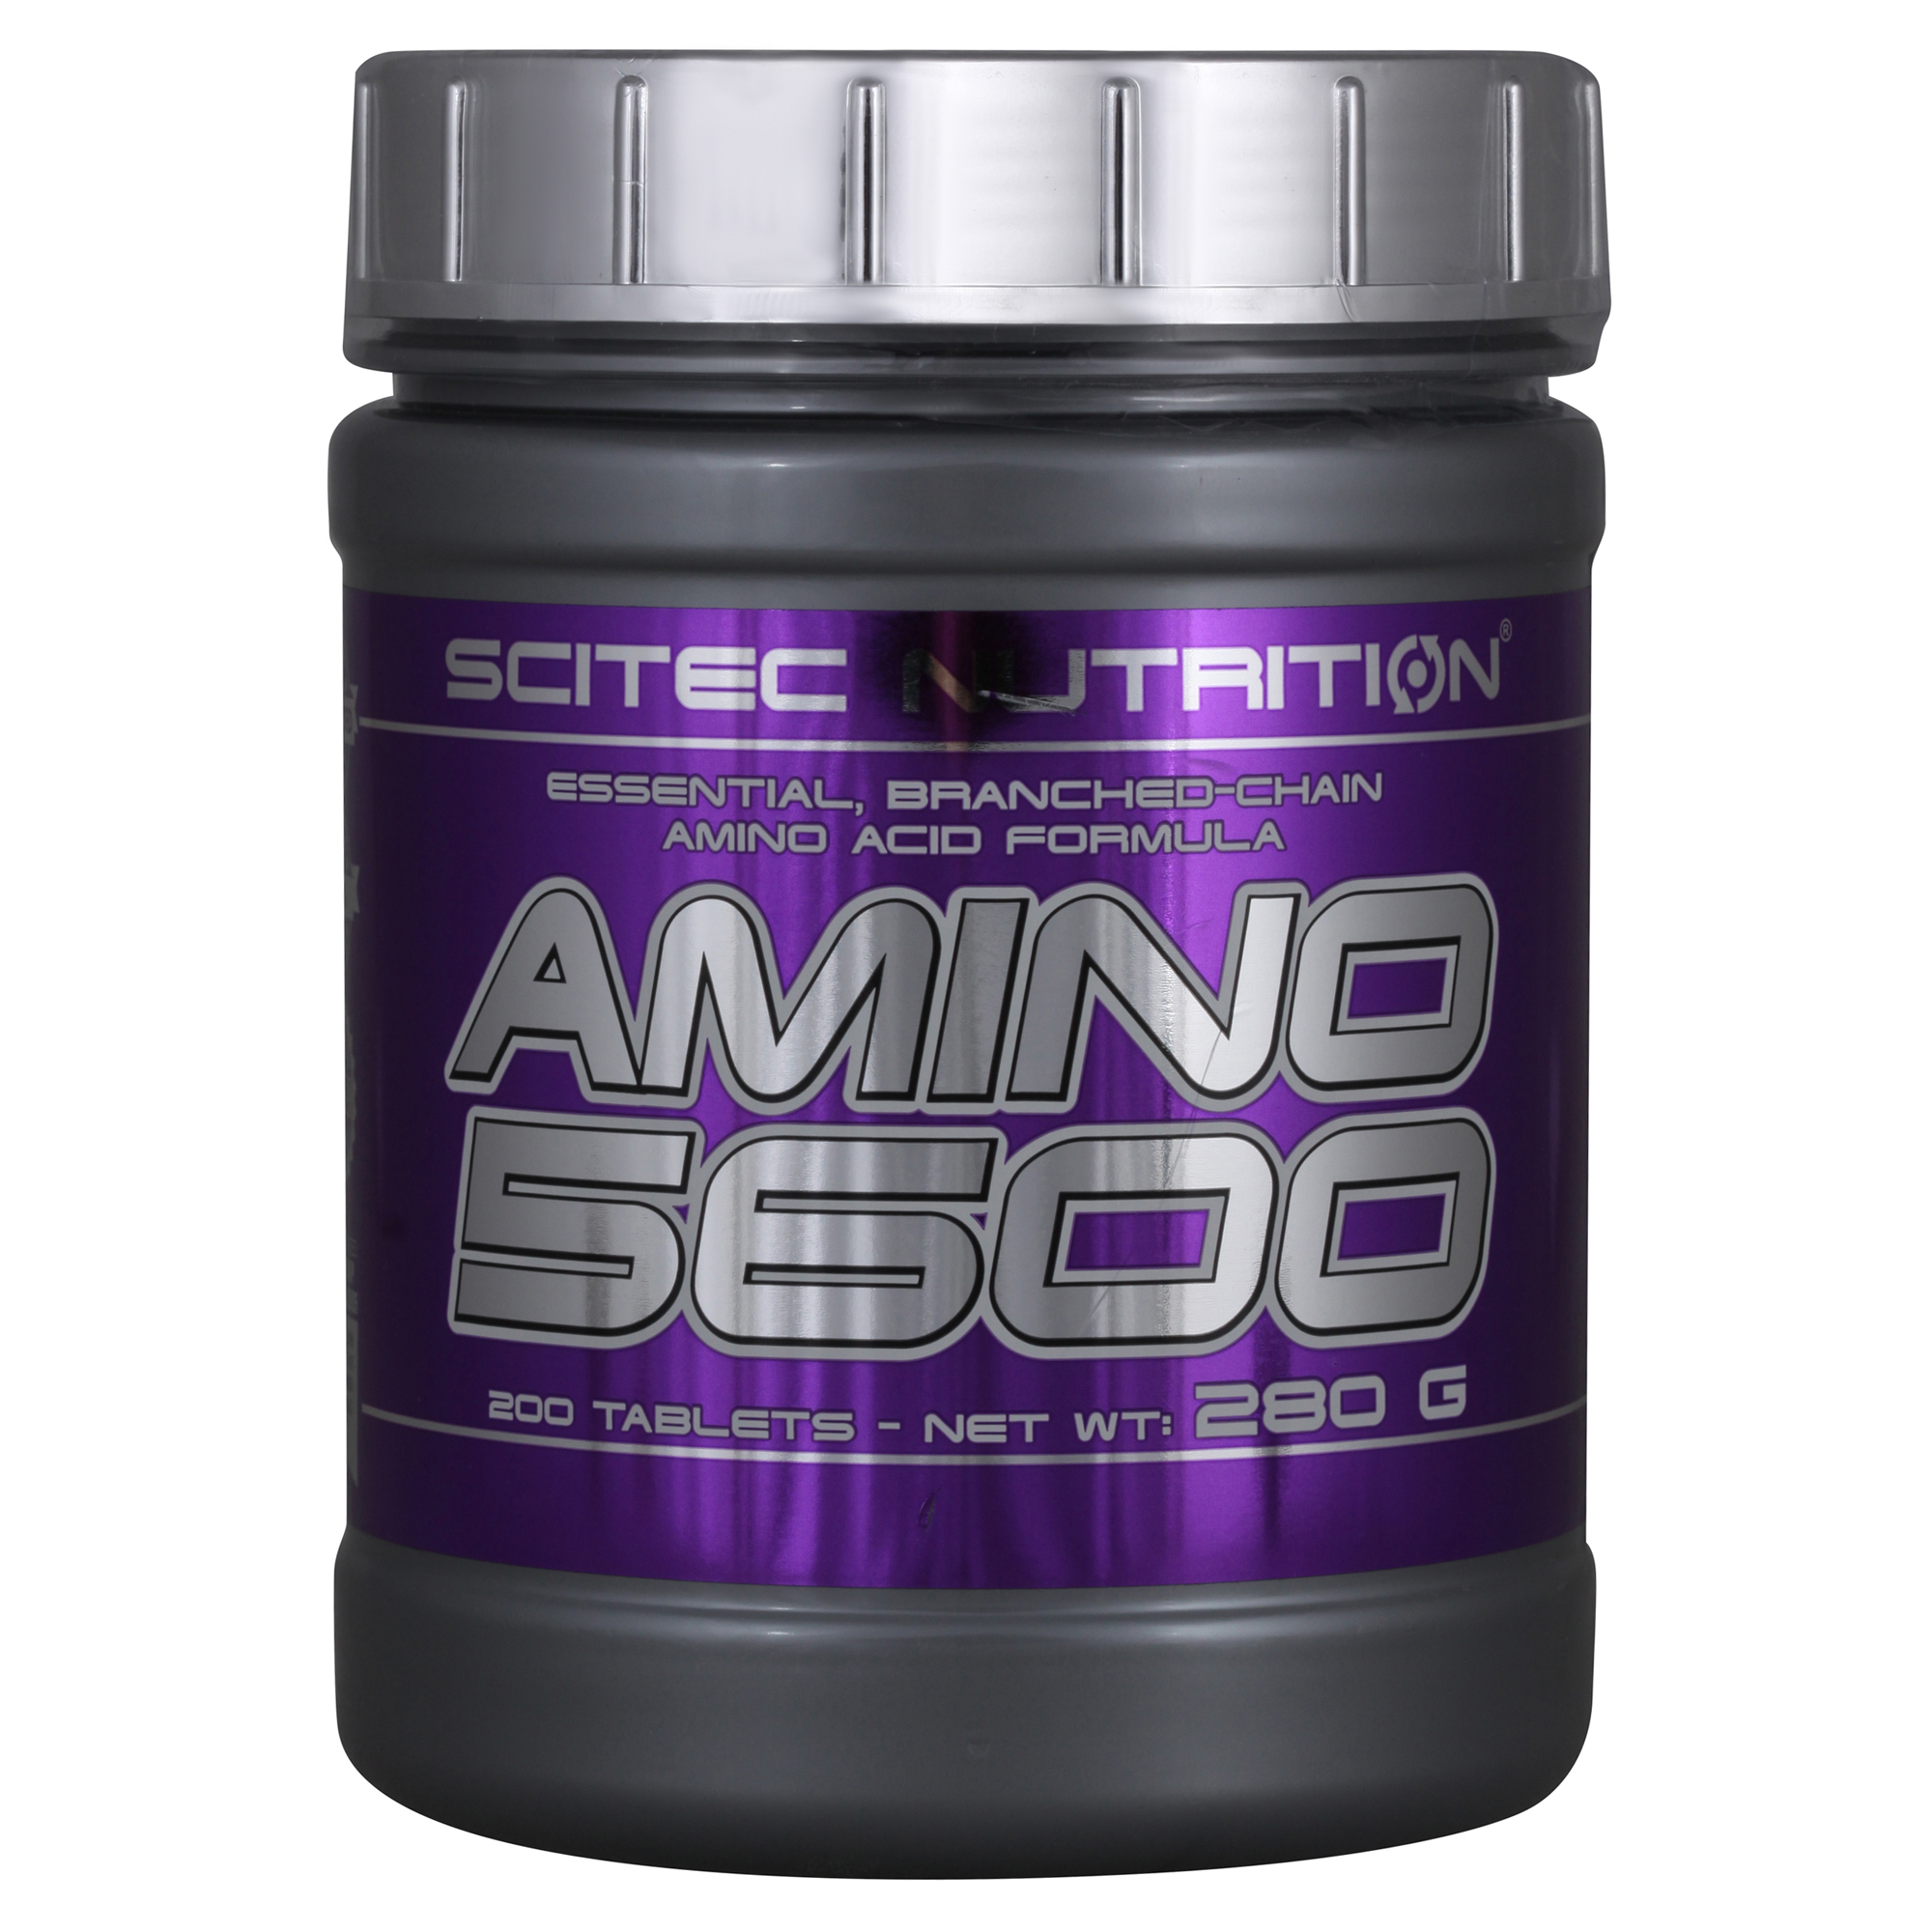 Scitec nutrition amino. Амино 5600 Scitec Nutrition. Nutrition Amino 5600 аминокислоты Scitec Nutrition. Scitec Nutrition Amino 5600 аминокислоты 500 табл.. Scitec Amino 5600 200 таб.